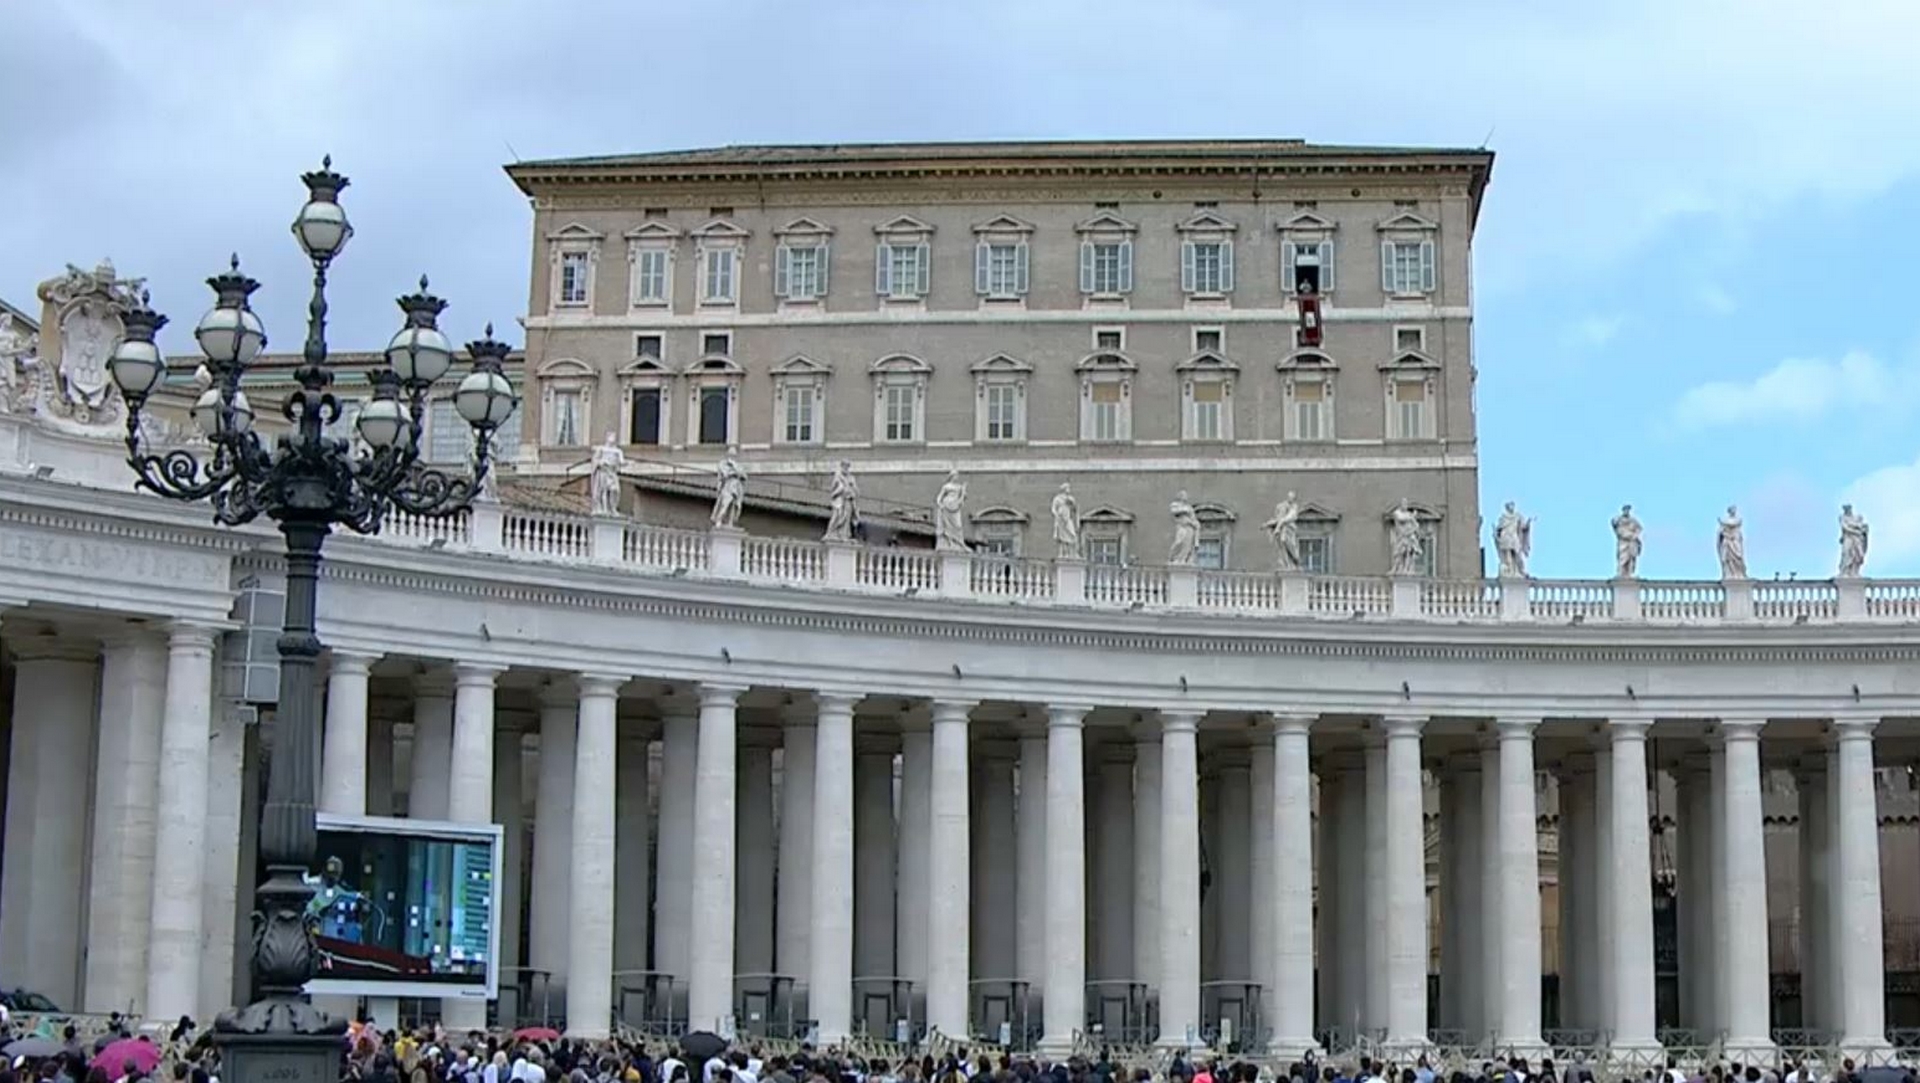 La foule suit le pape François lors de l'angelus de la fenêtre du Palais apostolique | capture d'écran CTV 